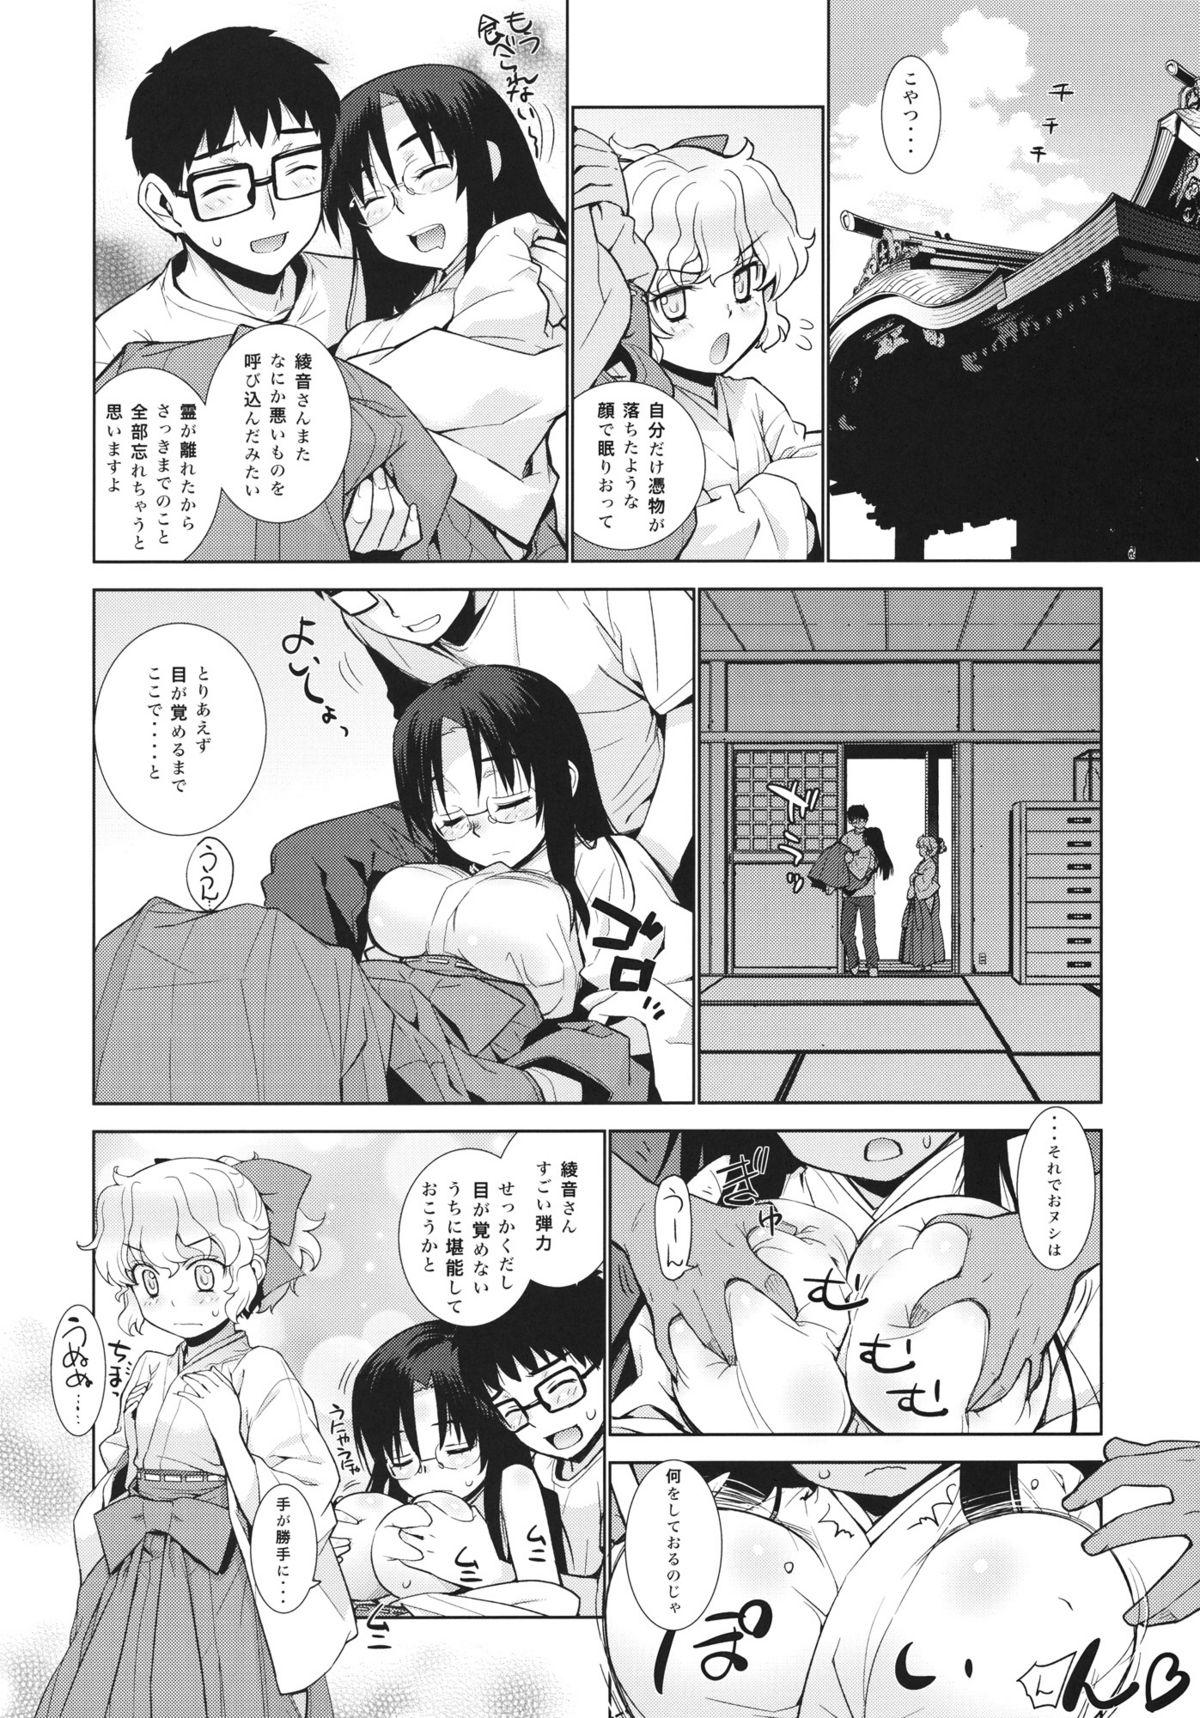 Maledom Kanara-sama no Nichijou Nana - Tonari no miko-san wa minna warau Hand Job - Page 6